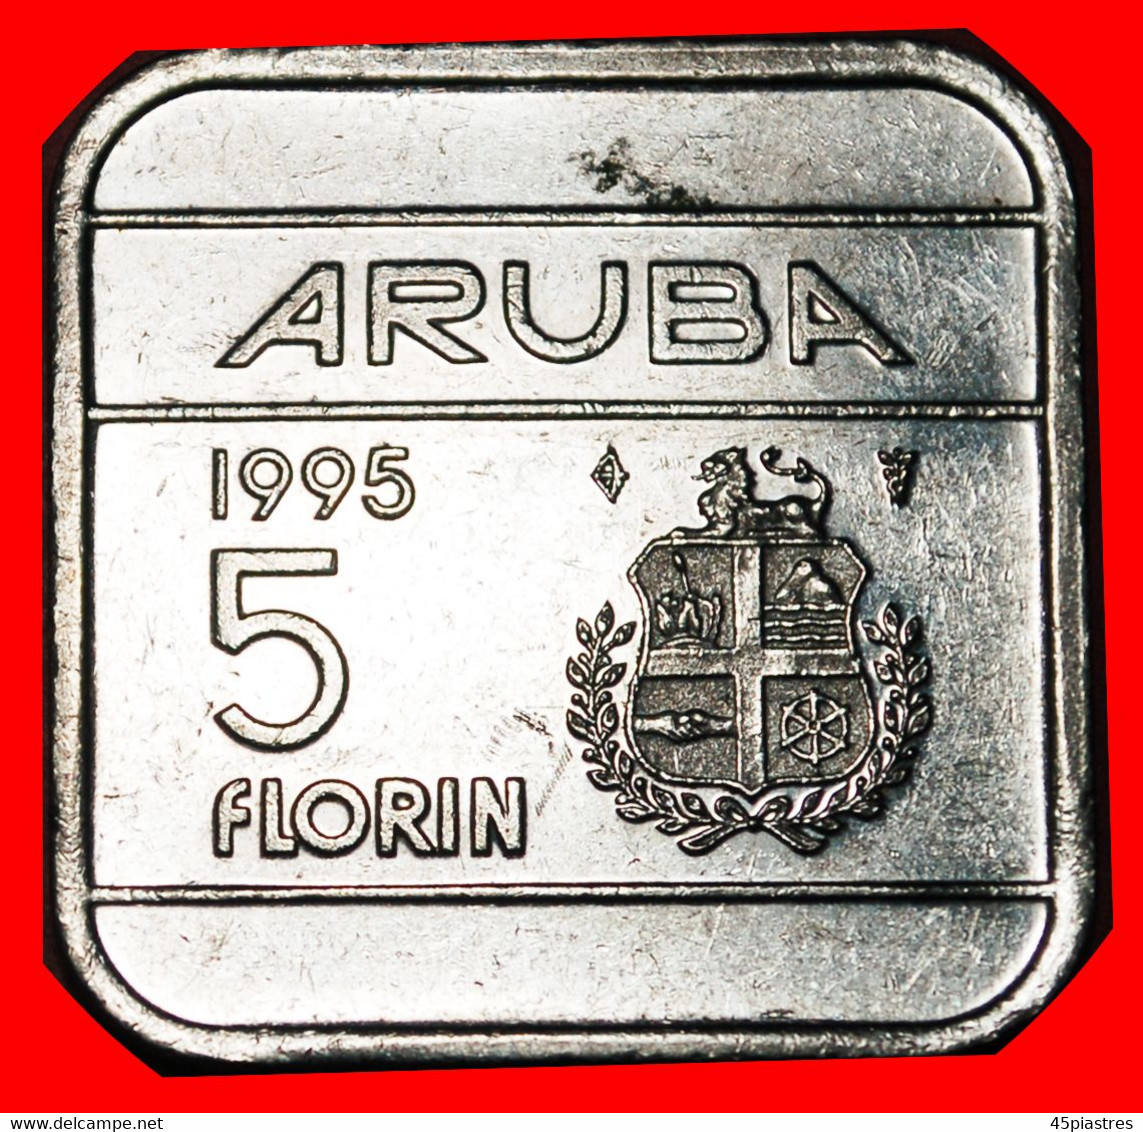 * NETHERLANDS (1995-2005): ARUBA ★ 5 FLORIN 1995 MINT LUSTRE!★ LOW START★ NO RESERVE! - Aruba